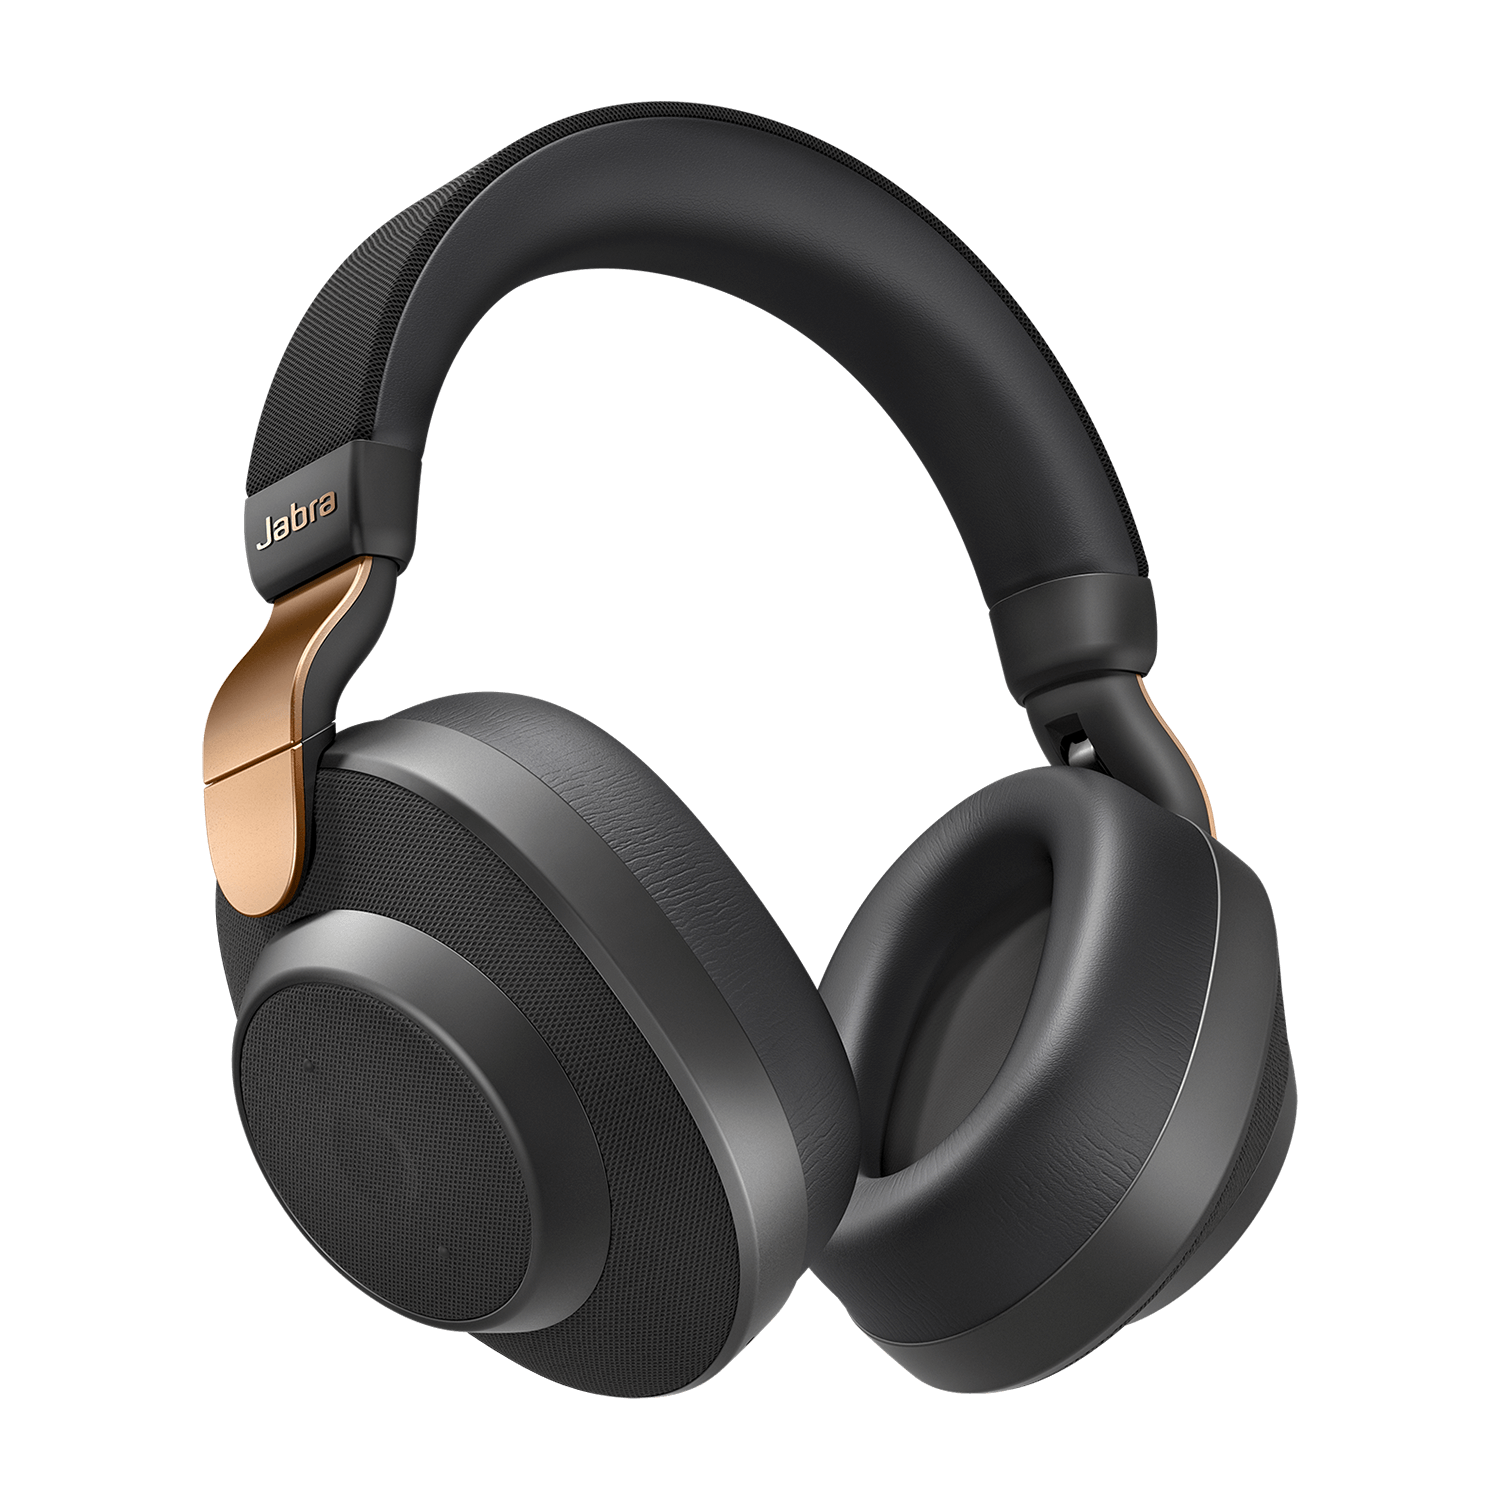 Jabra Elite 85h Wireless Noise Canceling Headphones - Good Condition